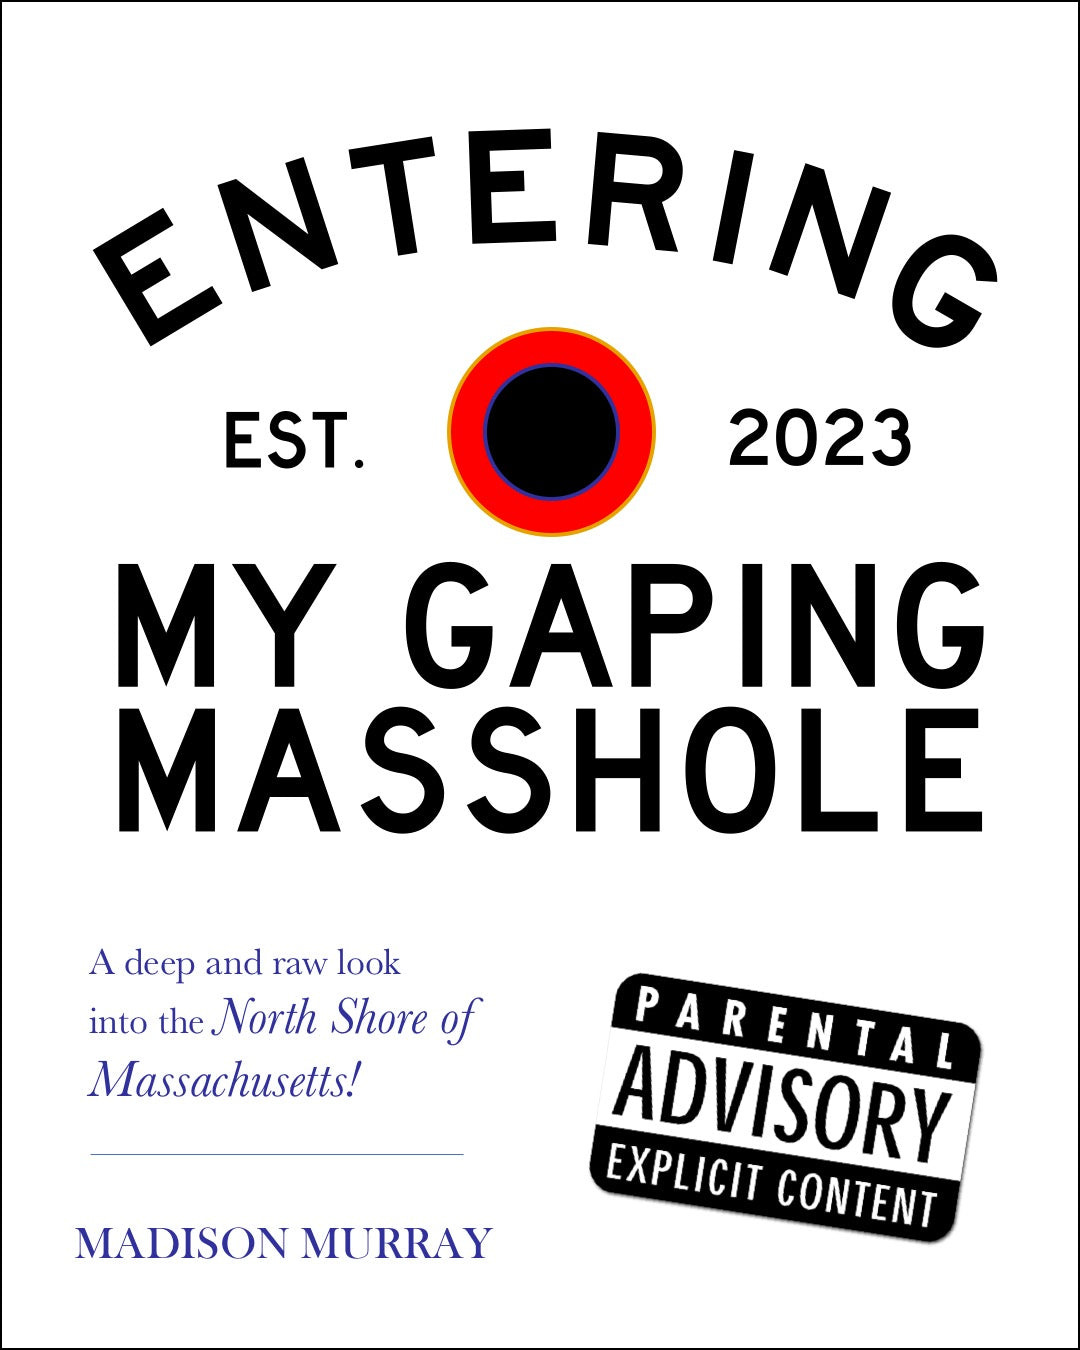 "My Gaping Masshole" by Madison Murray